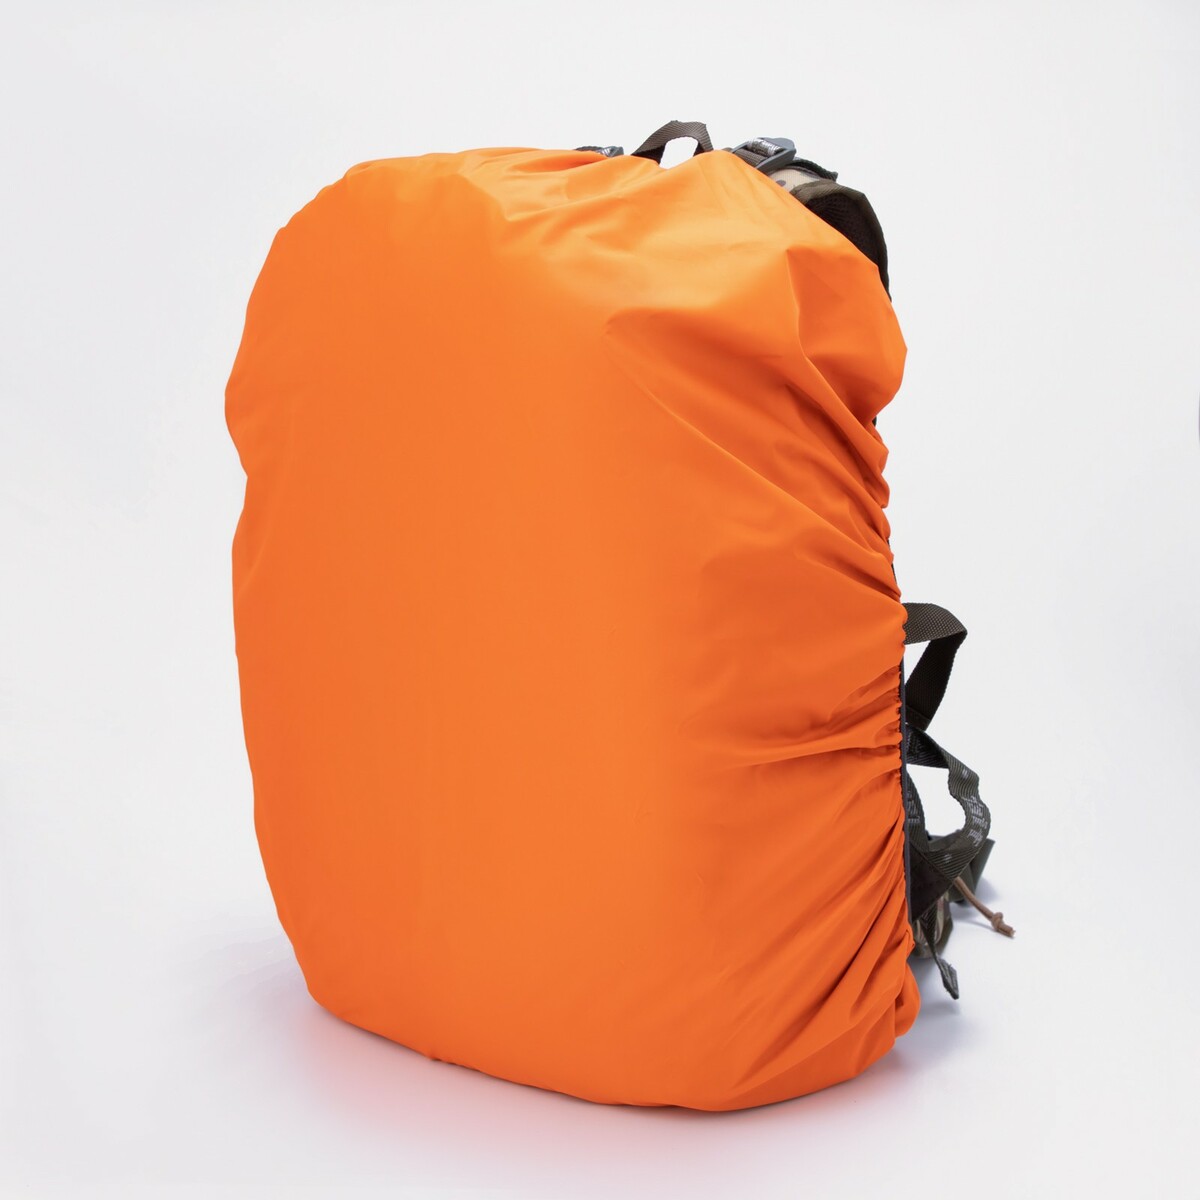 Чехол на рюкзак 60 л, цвет оранжевый чехол на рюкзак 60 л